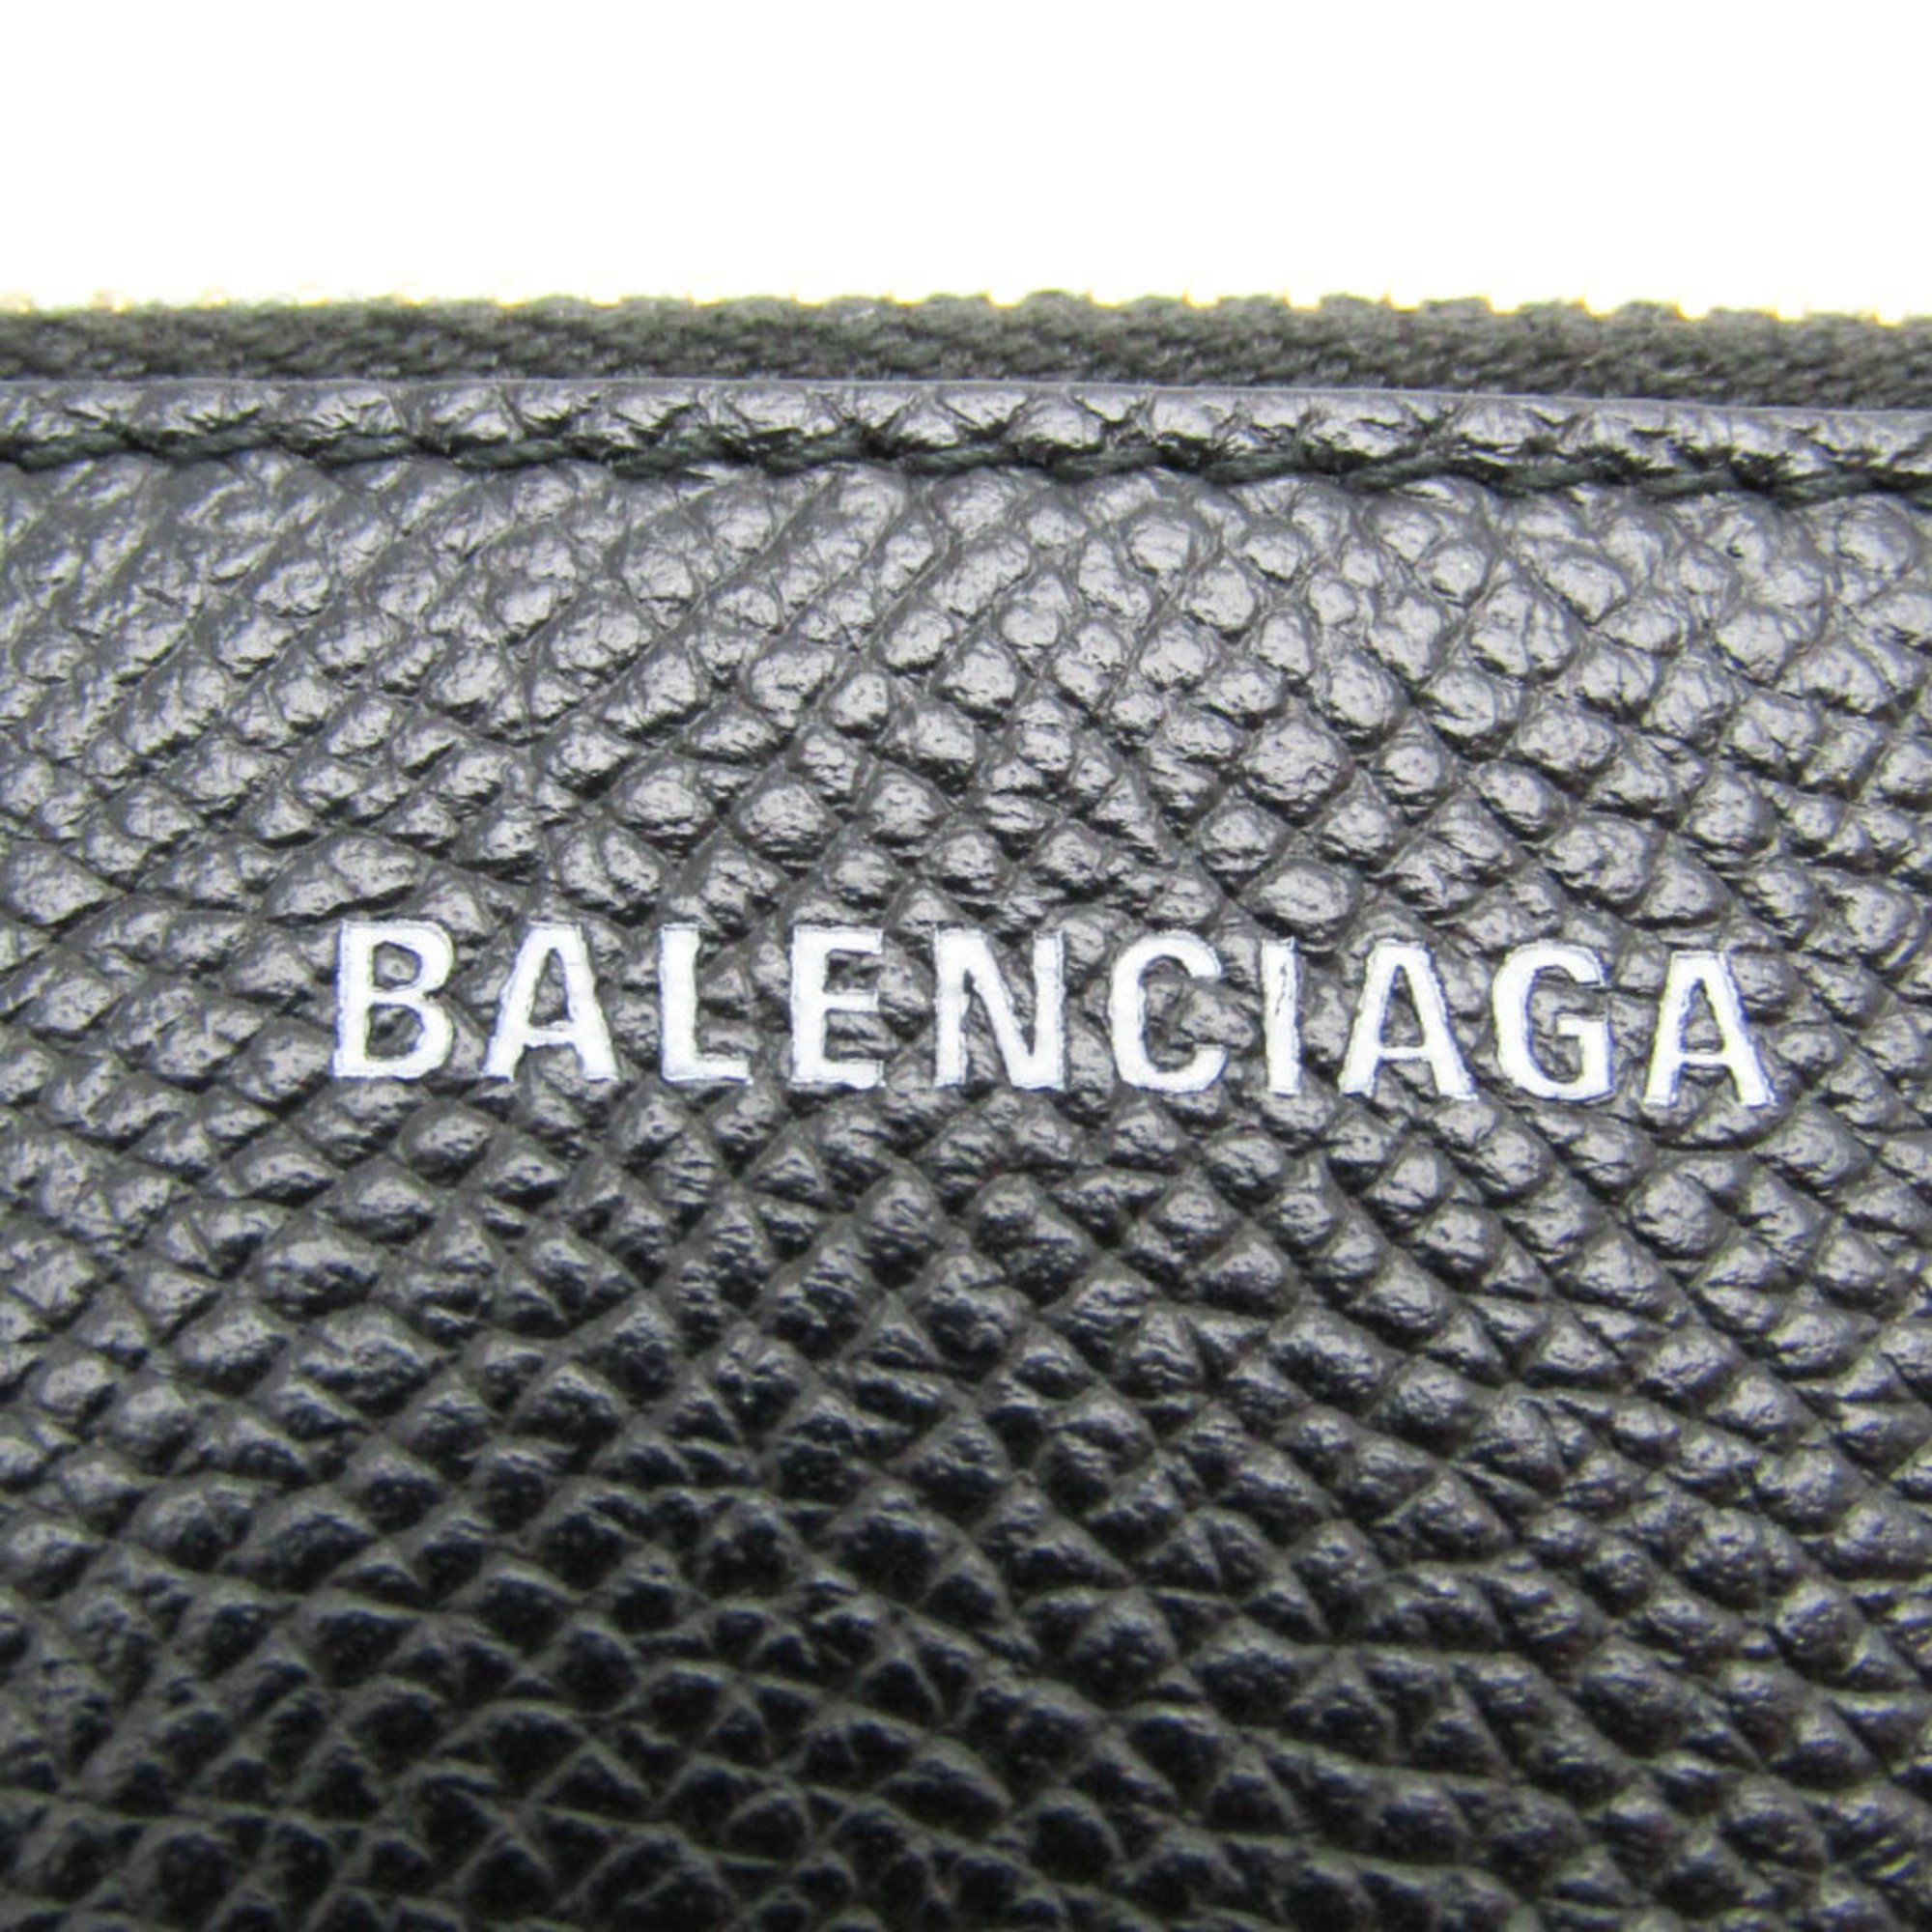 Balenciaga VILLE LONG CARD HAND WRITTEN SIGNATURE Coin Case 581102 Leather Card Case Black